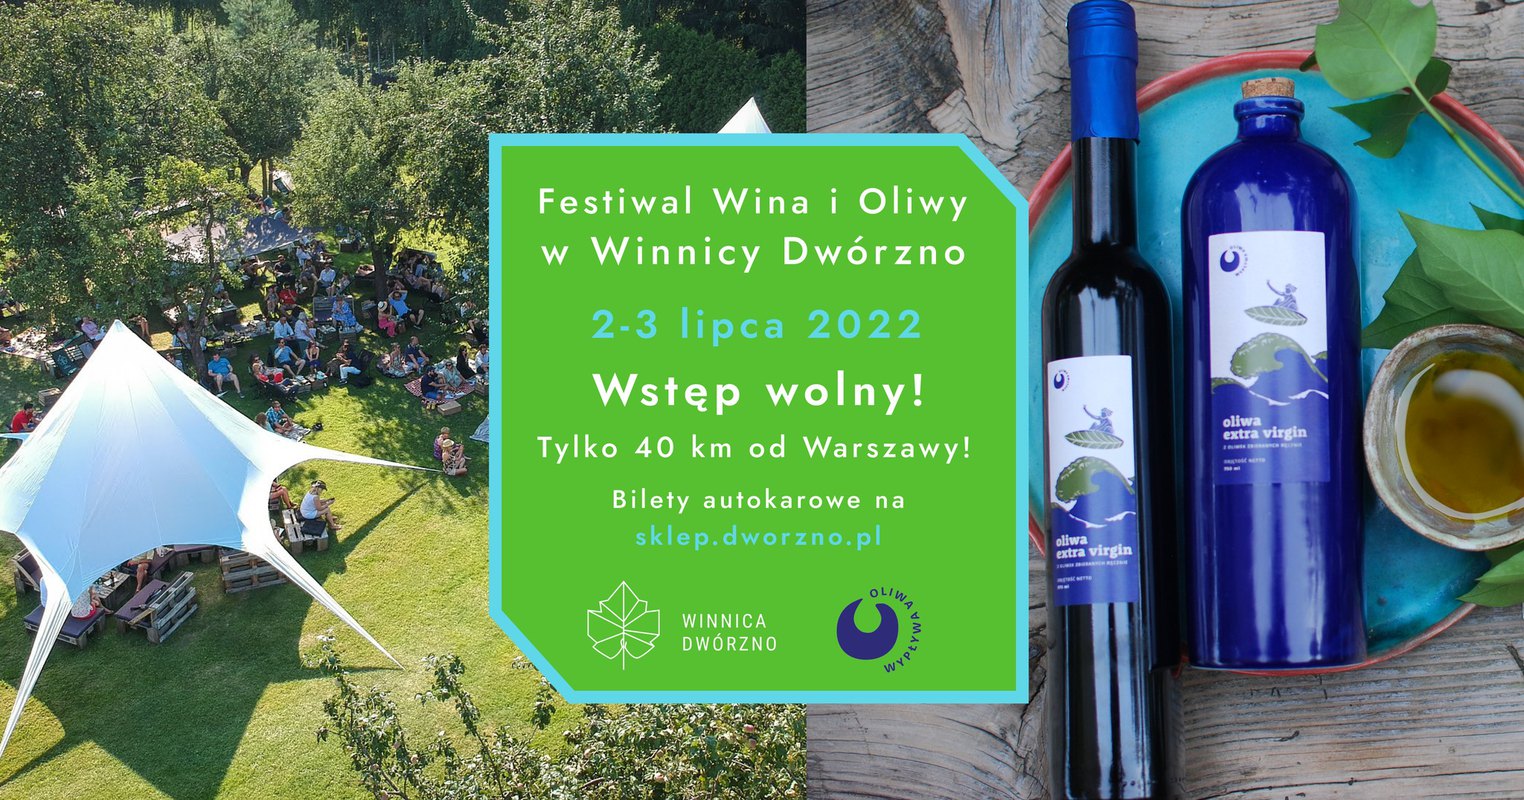 Festiwal Wina i Oliwy 2022 w Winnicy Dwórzno 2-3.07 - wstęp wolny!